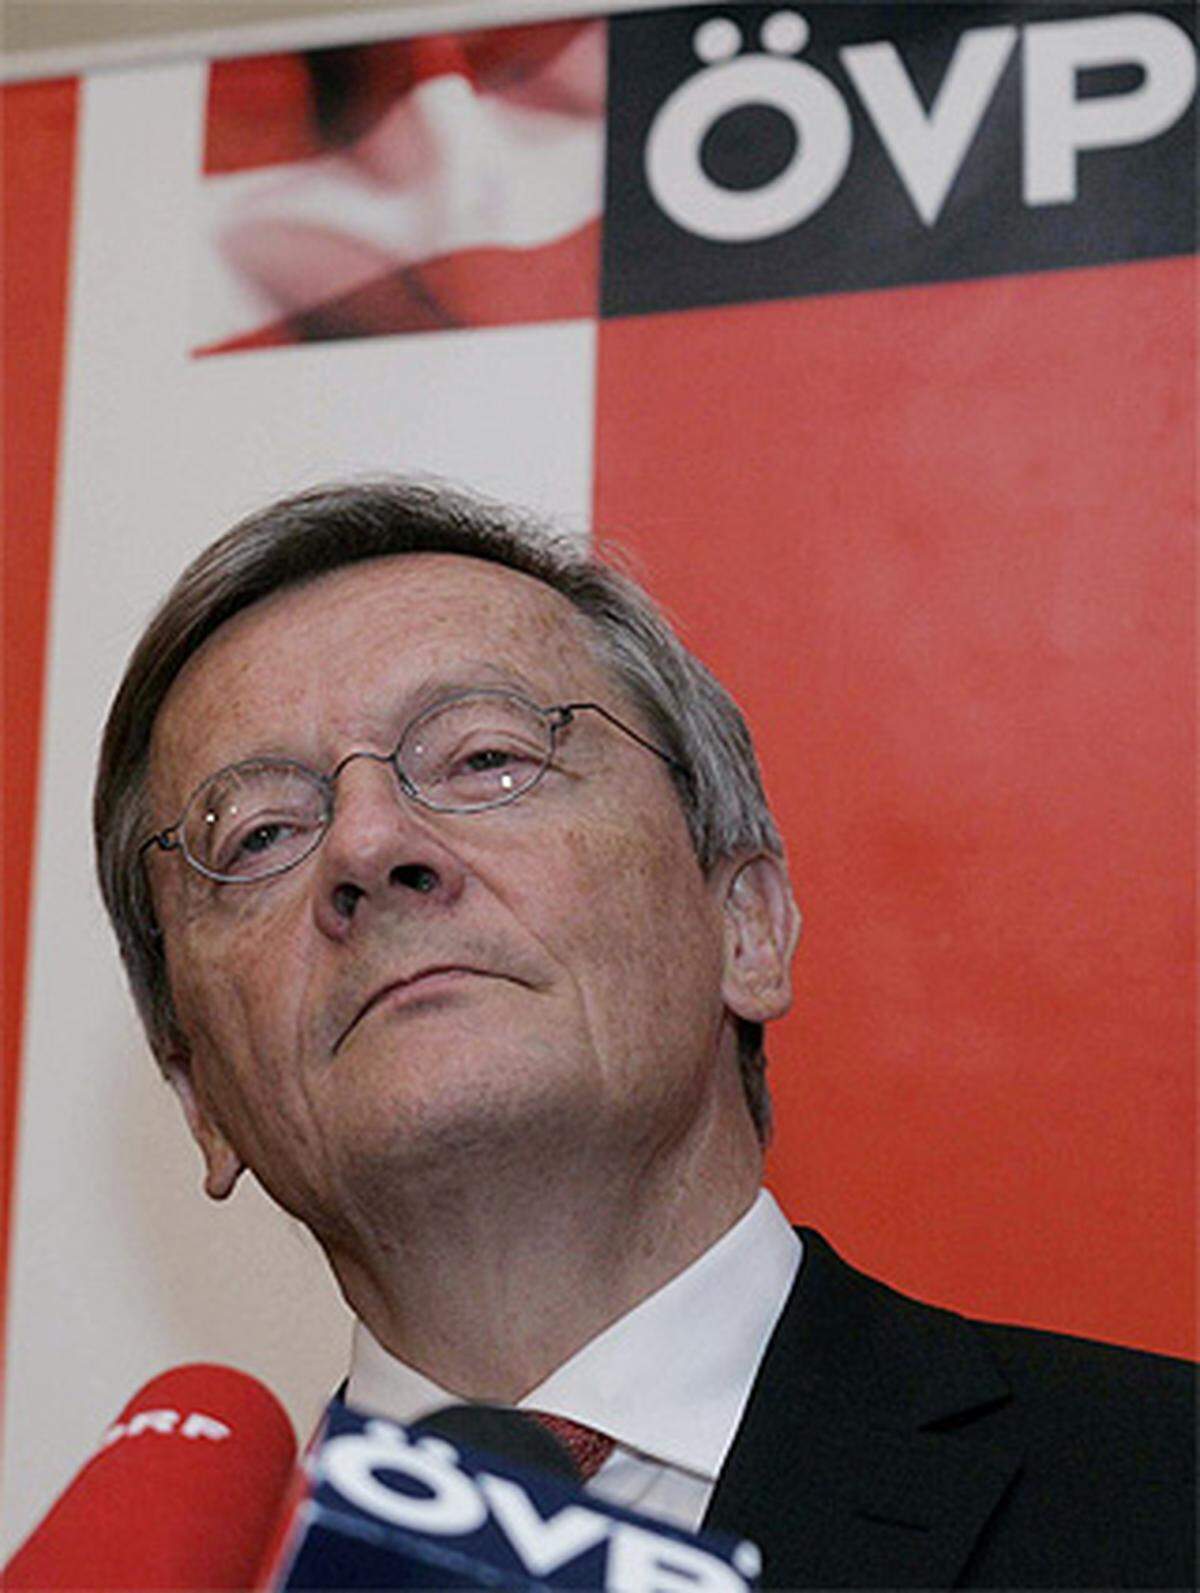 Ex-Kanzler Wolfgang Schüssel hat am im Herbst 2011 seinen Rücktritt als ÖVP-Abgeordneter erklärt. Sein schwarz-blaues Kabinett war zuletzt wegen der Telekom-Affäre in die Negativ-Schlagzeilen geraten. Schüssel antwortete zunächst - wie schon so oft als Kanzler - mit Schweigen. Ein Porträt.